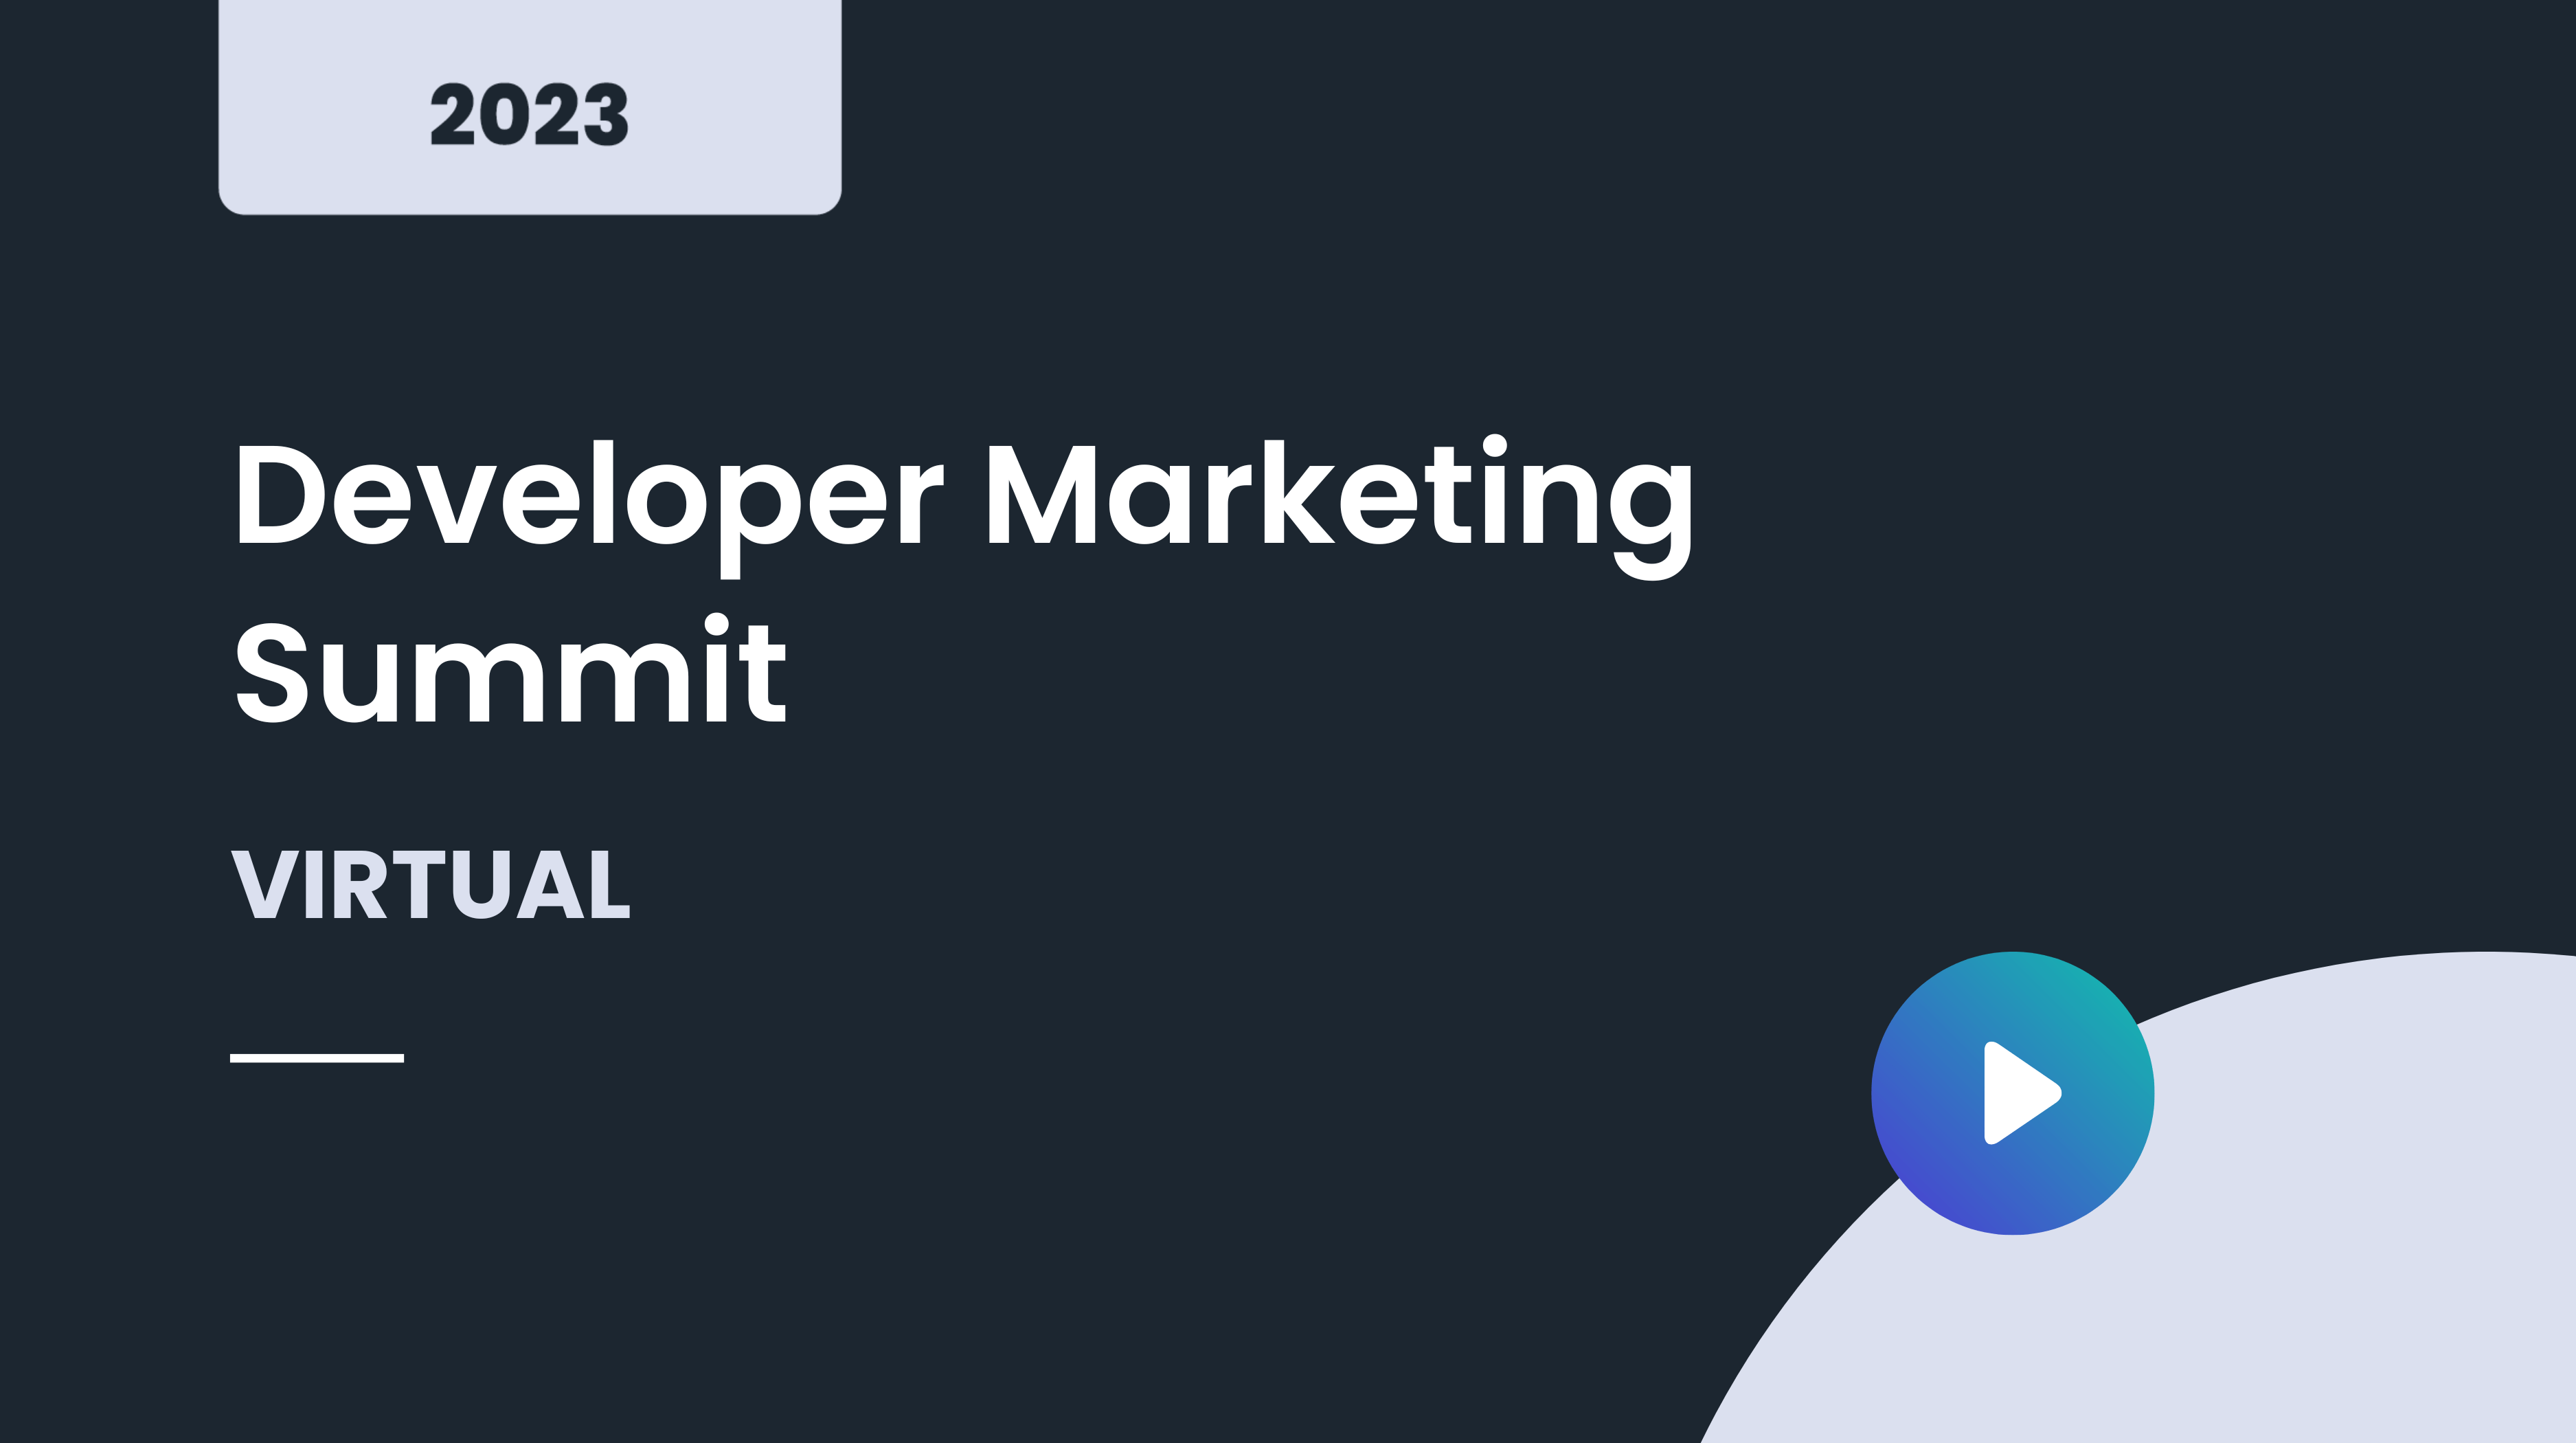 Developer Marketing Summit March 2023